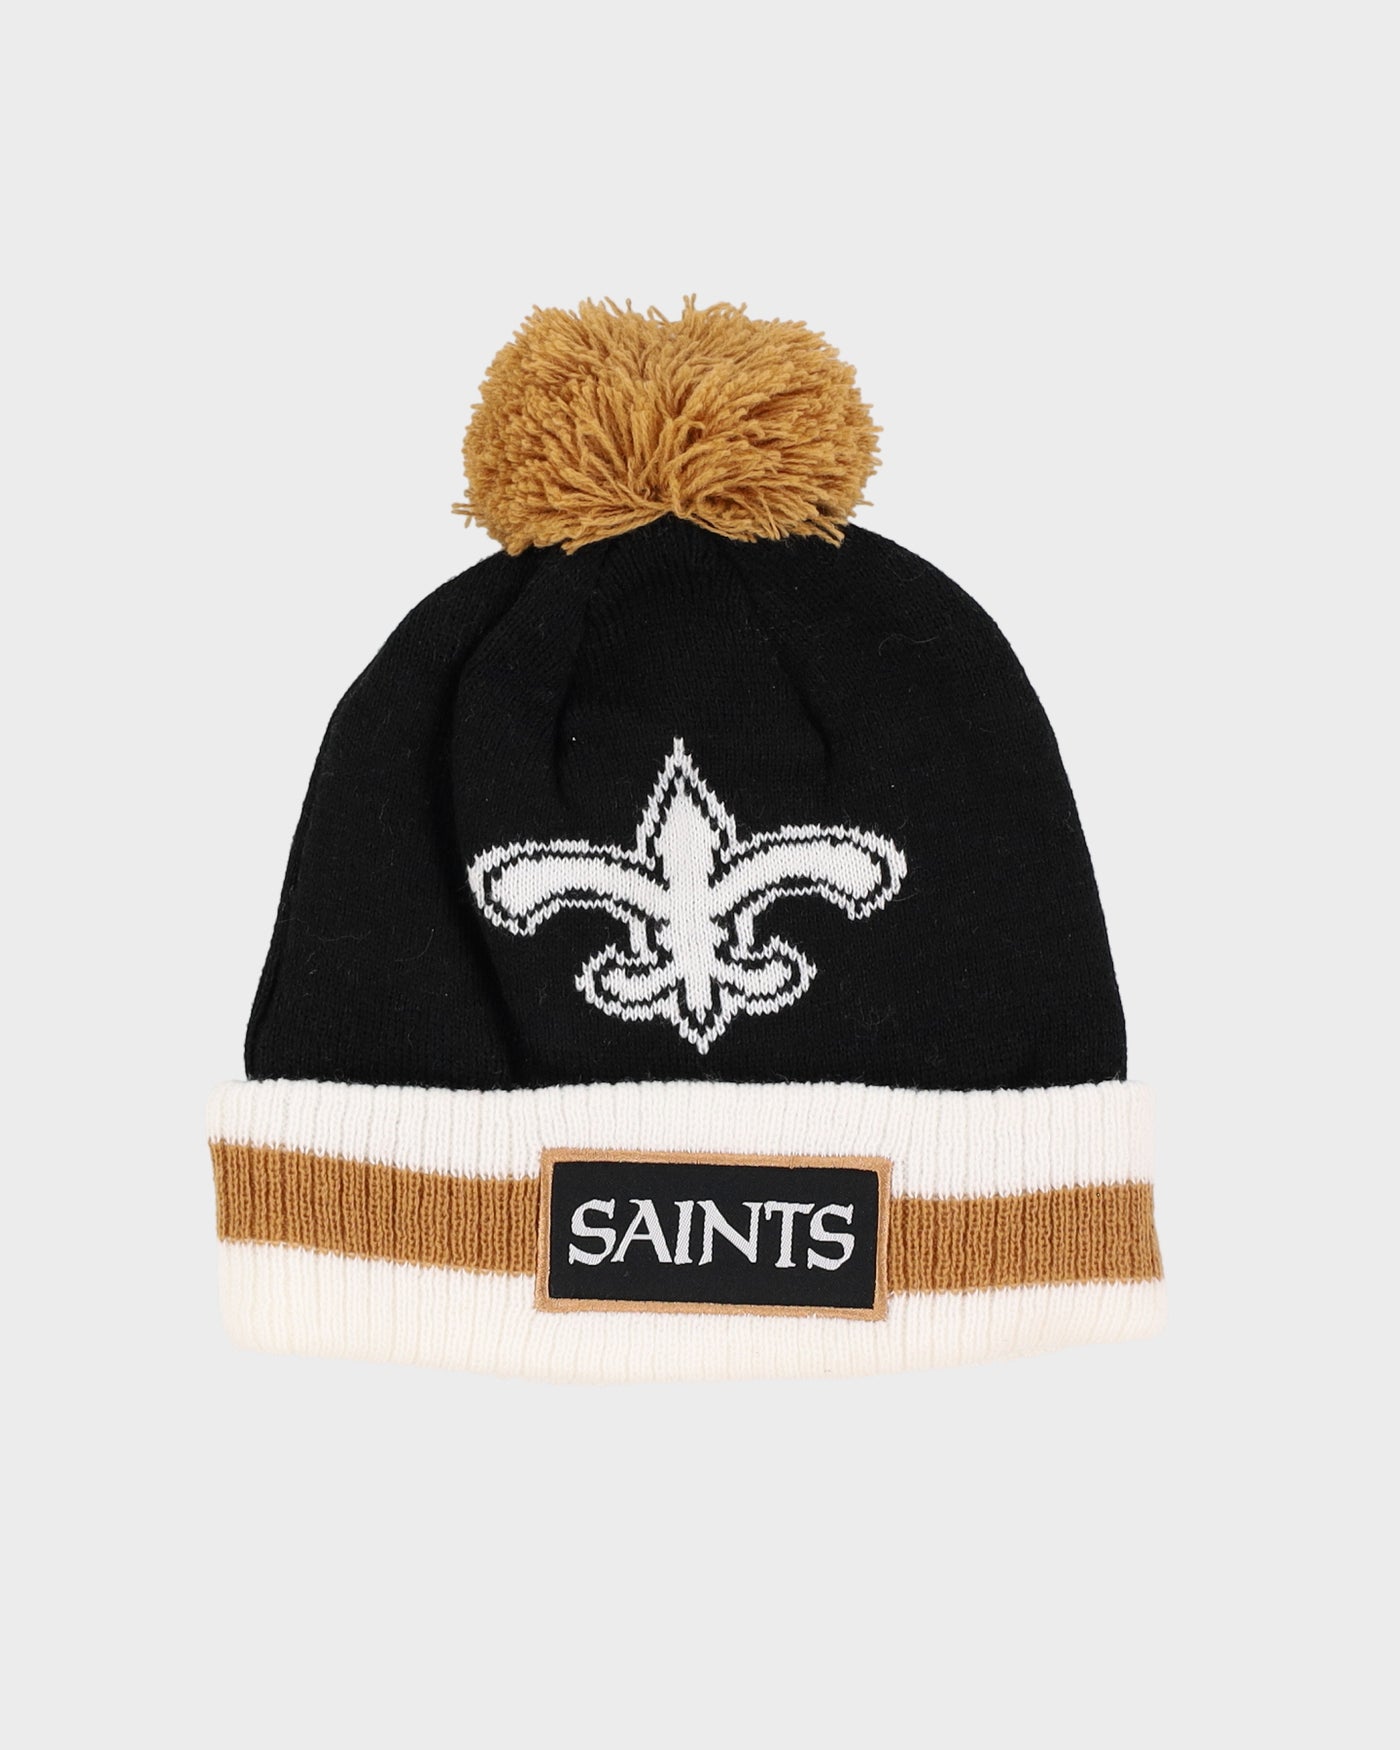 New Orleans Saints NFL Bobble Hat Beanie